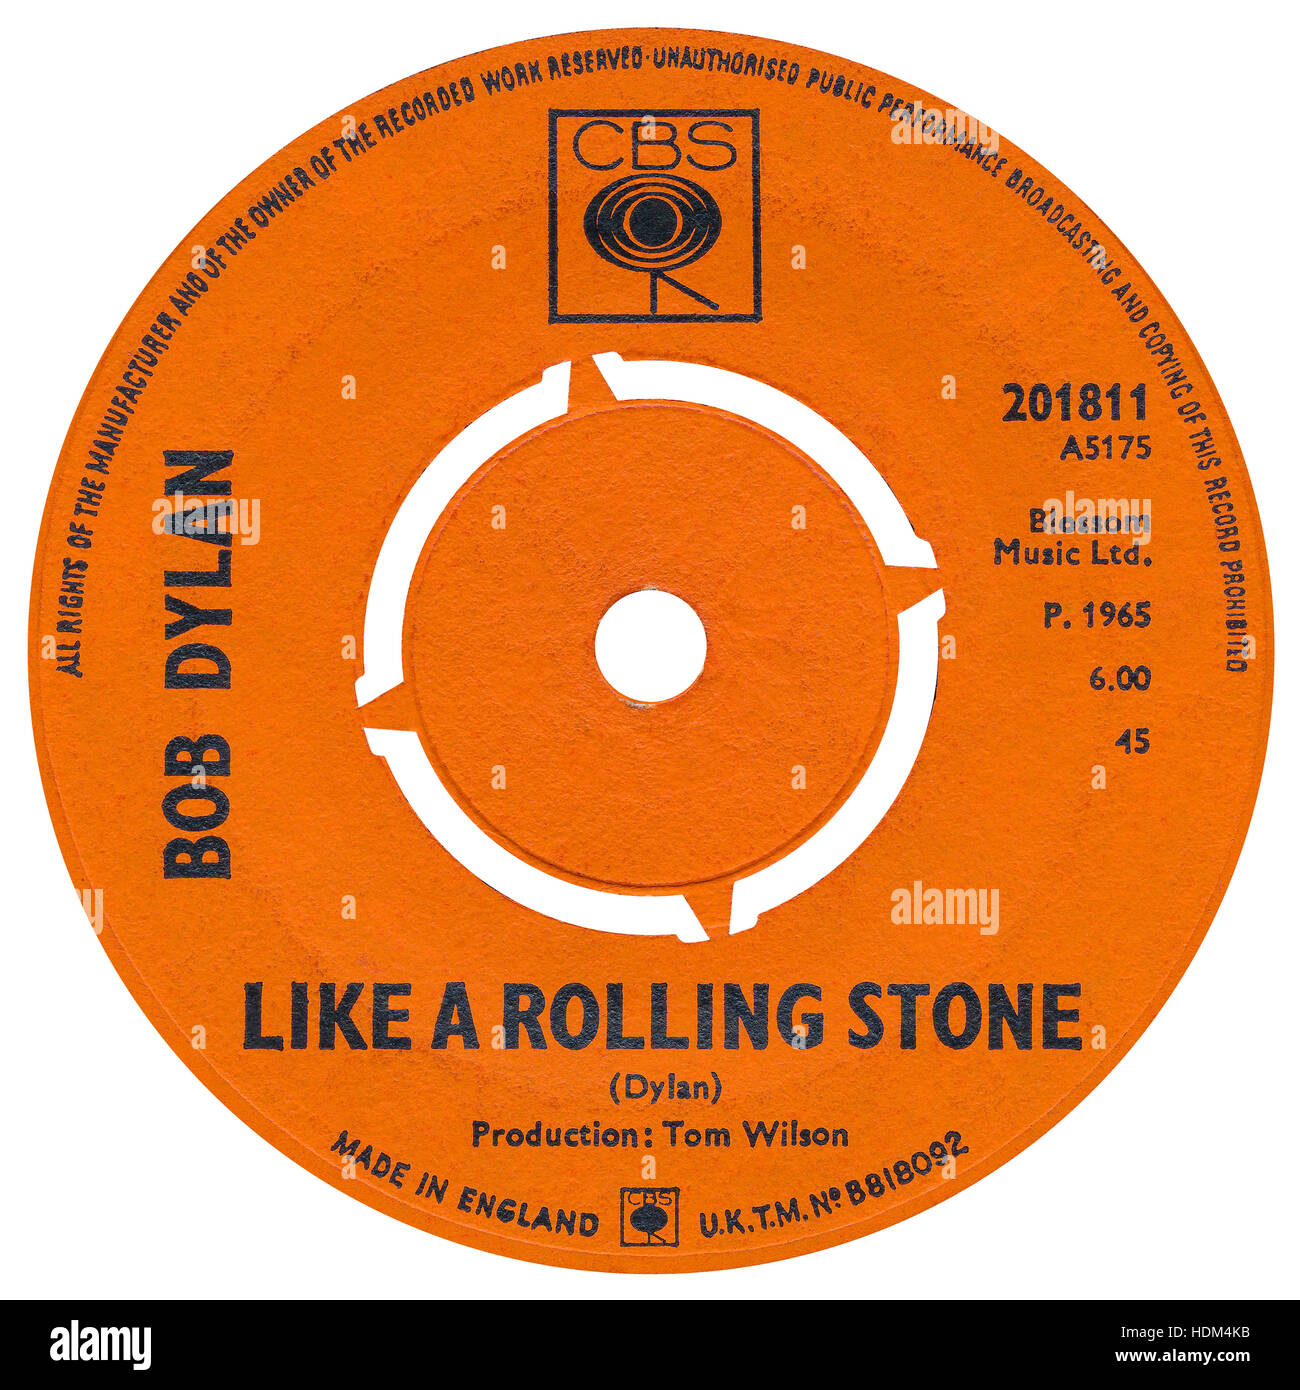 45 TR/MIN 7' UK record label de comme un Rolling Stone de Bob Dylan sur le label CBS à partir de 1965 Banque D'Images